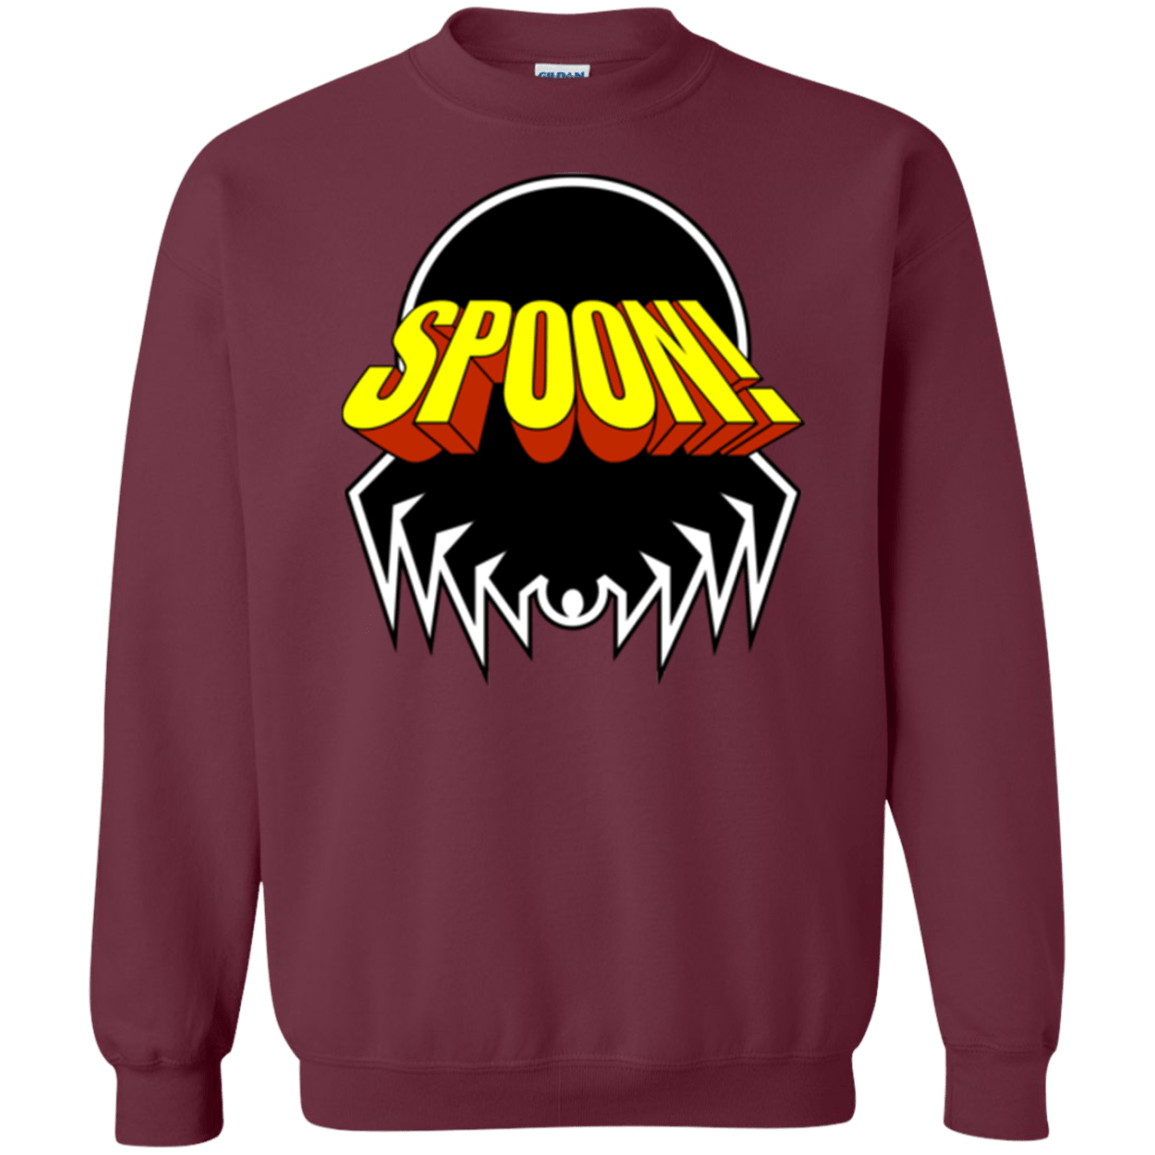 Sweatshirts Maroon / Small Honk If You Love Justice! Crewneck Sweatshirt